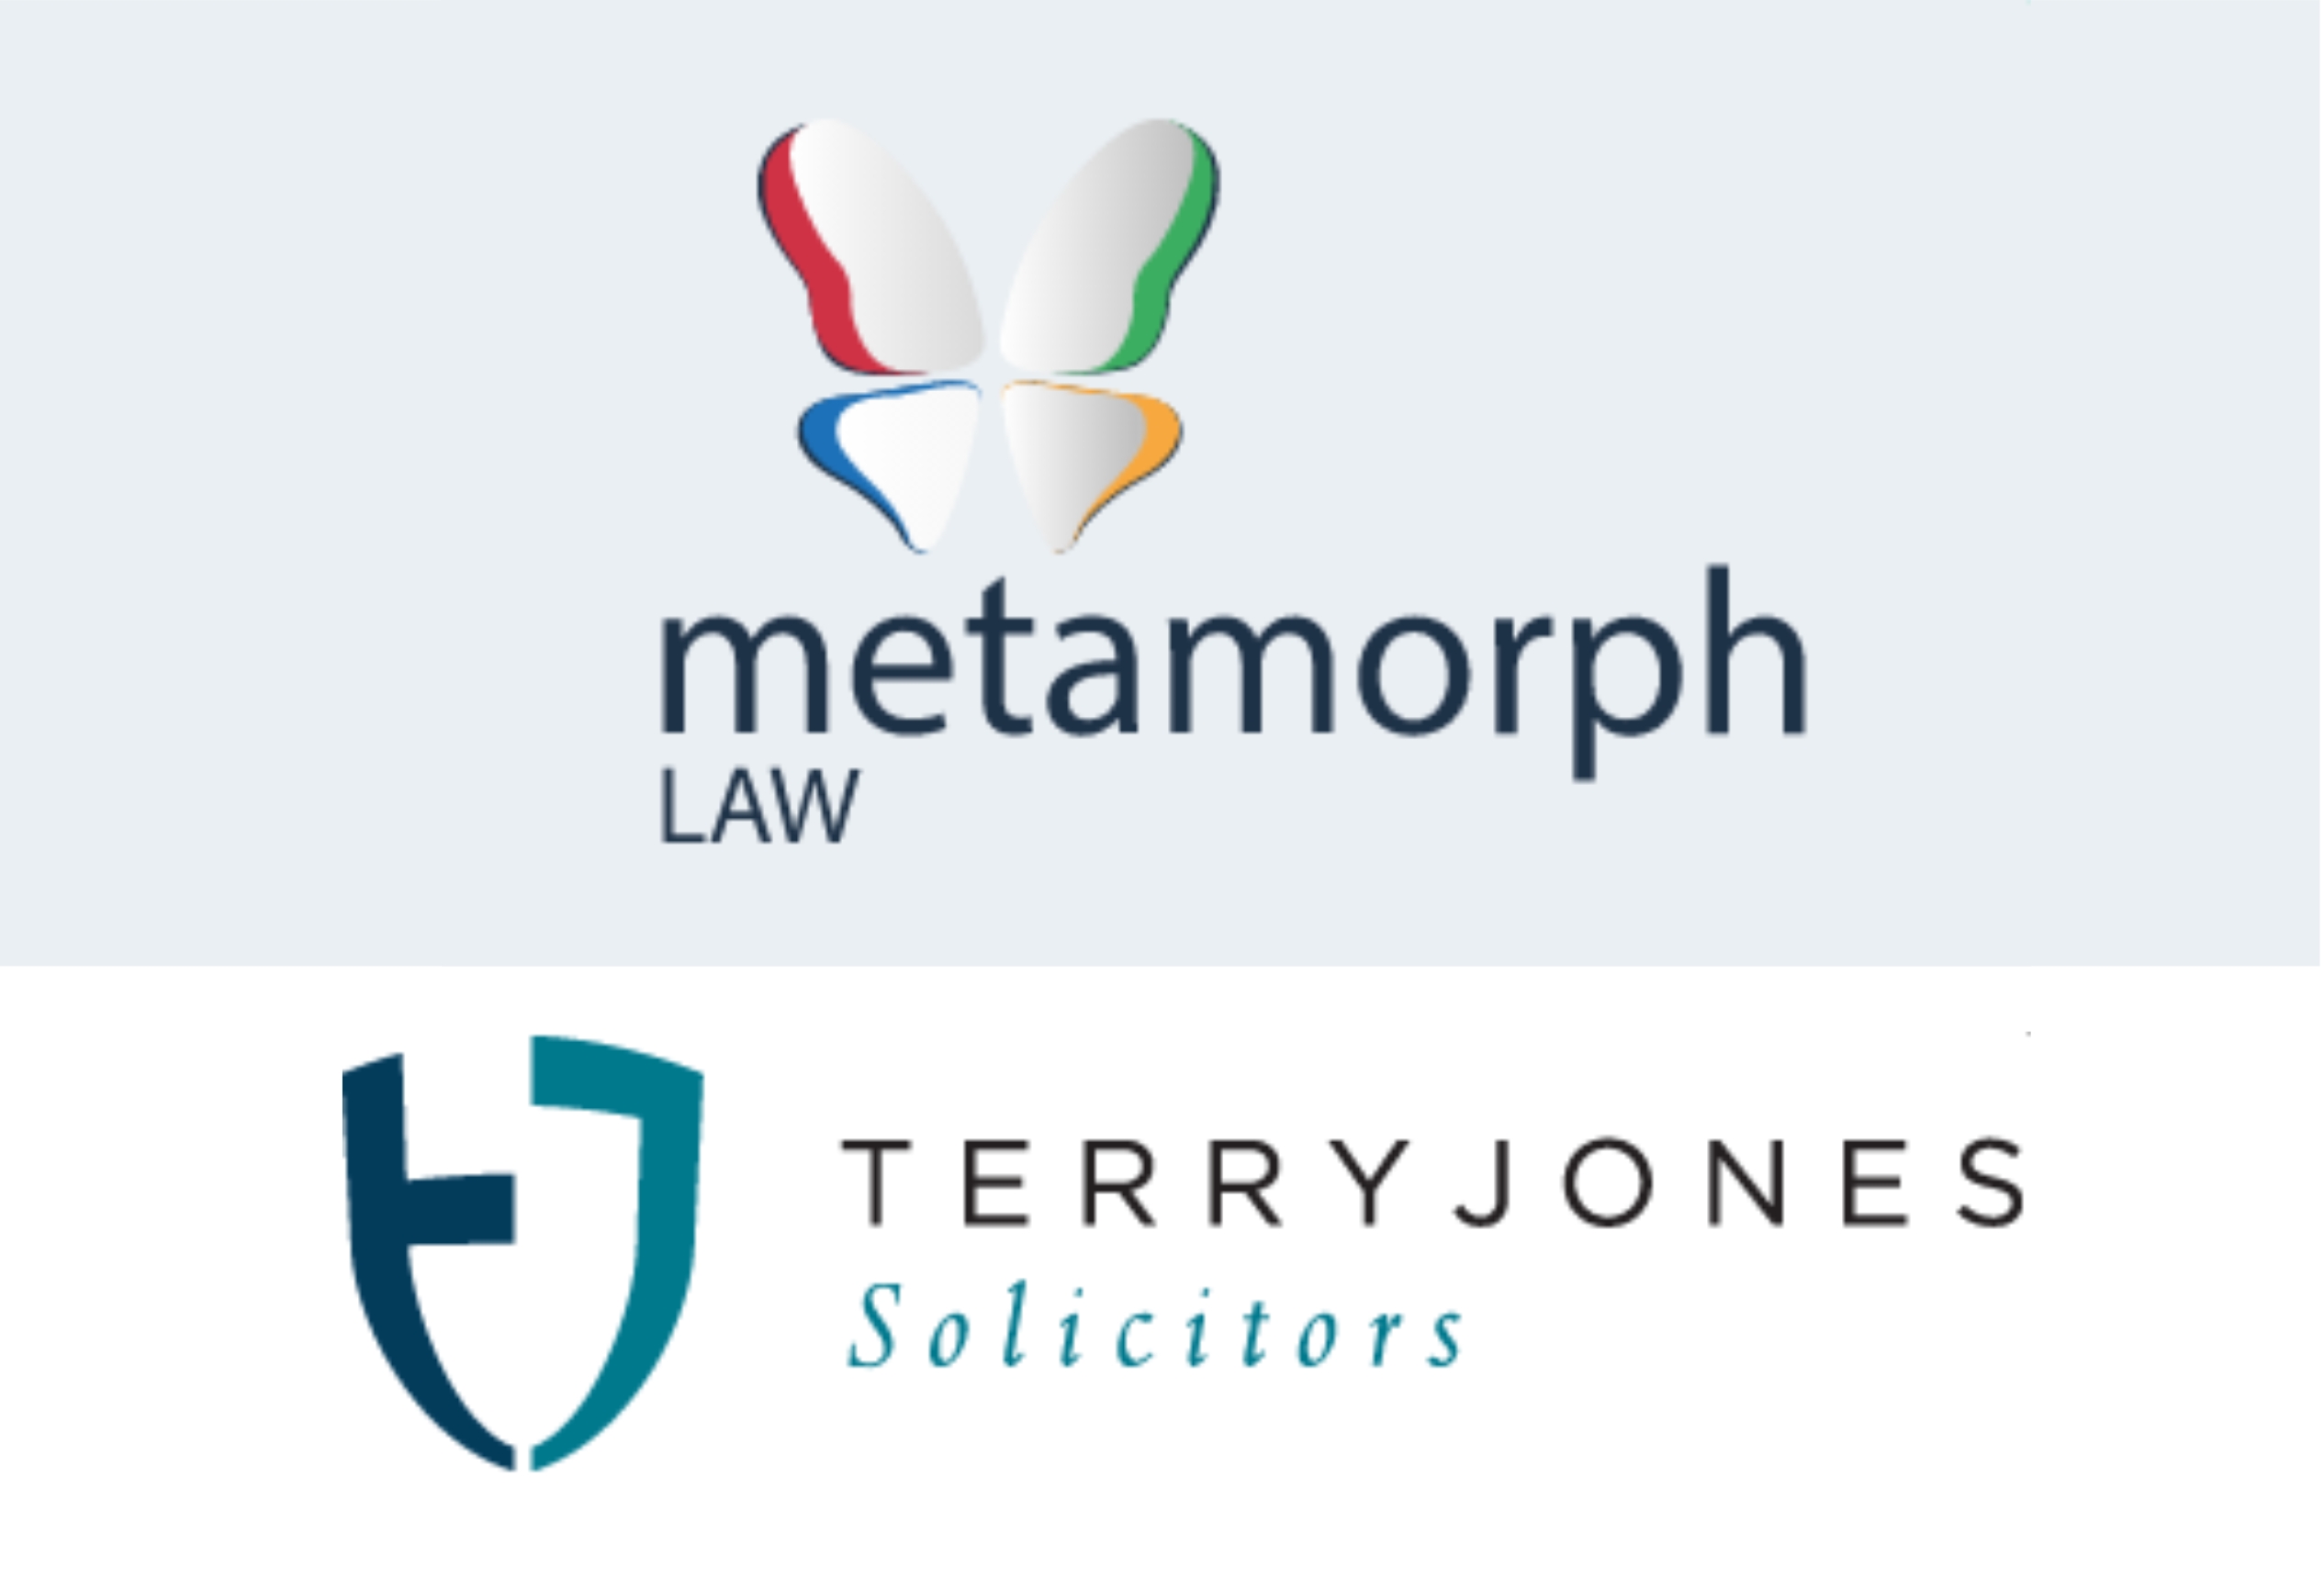 Metamorph Law - Terry Jones Solicitors